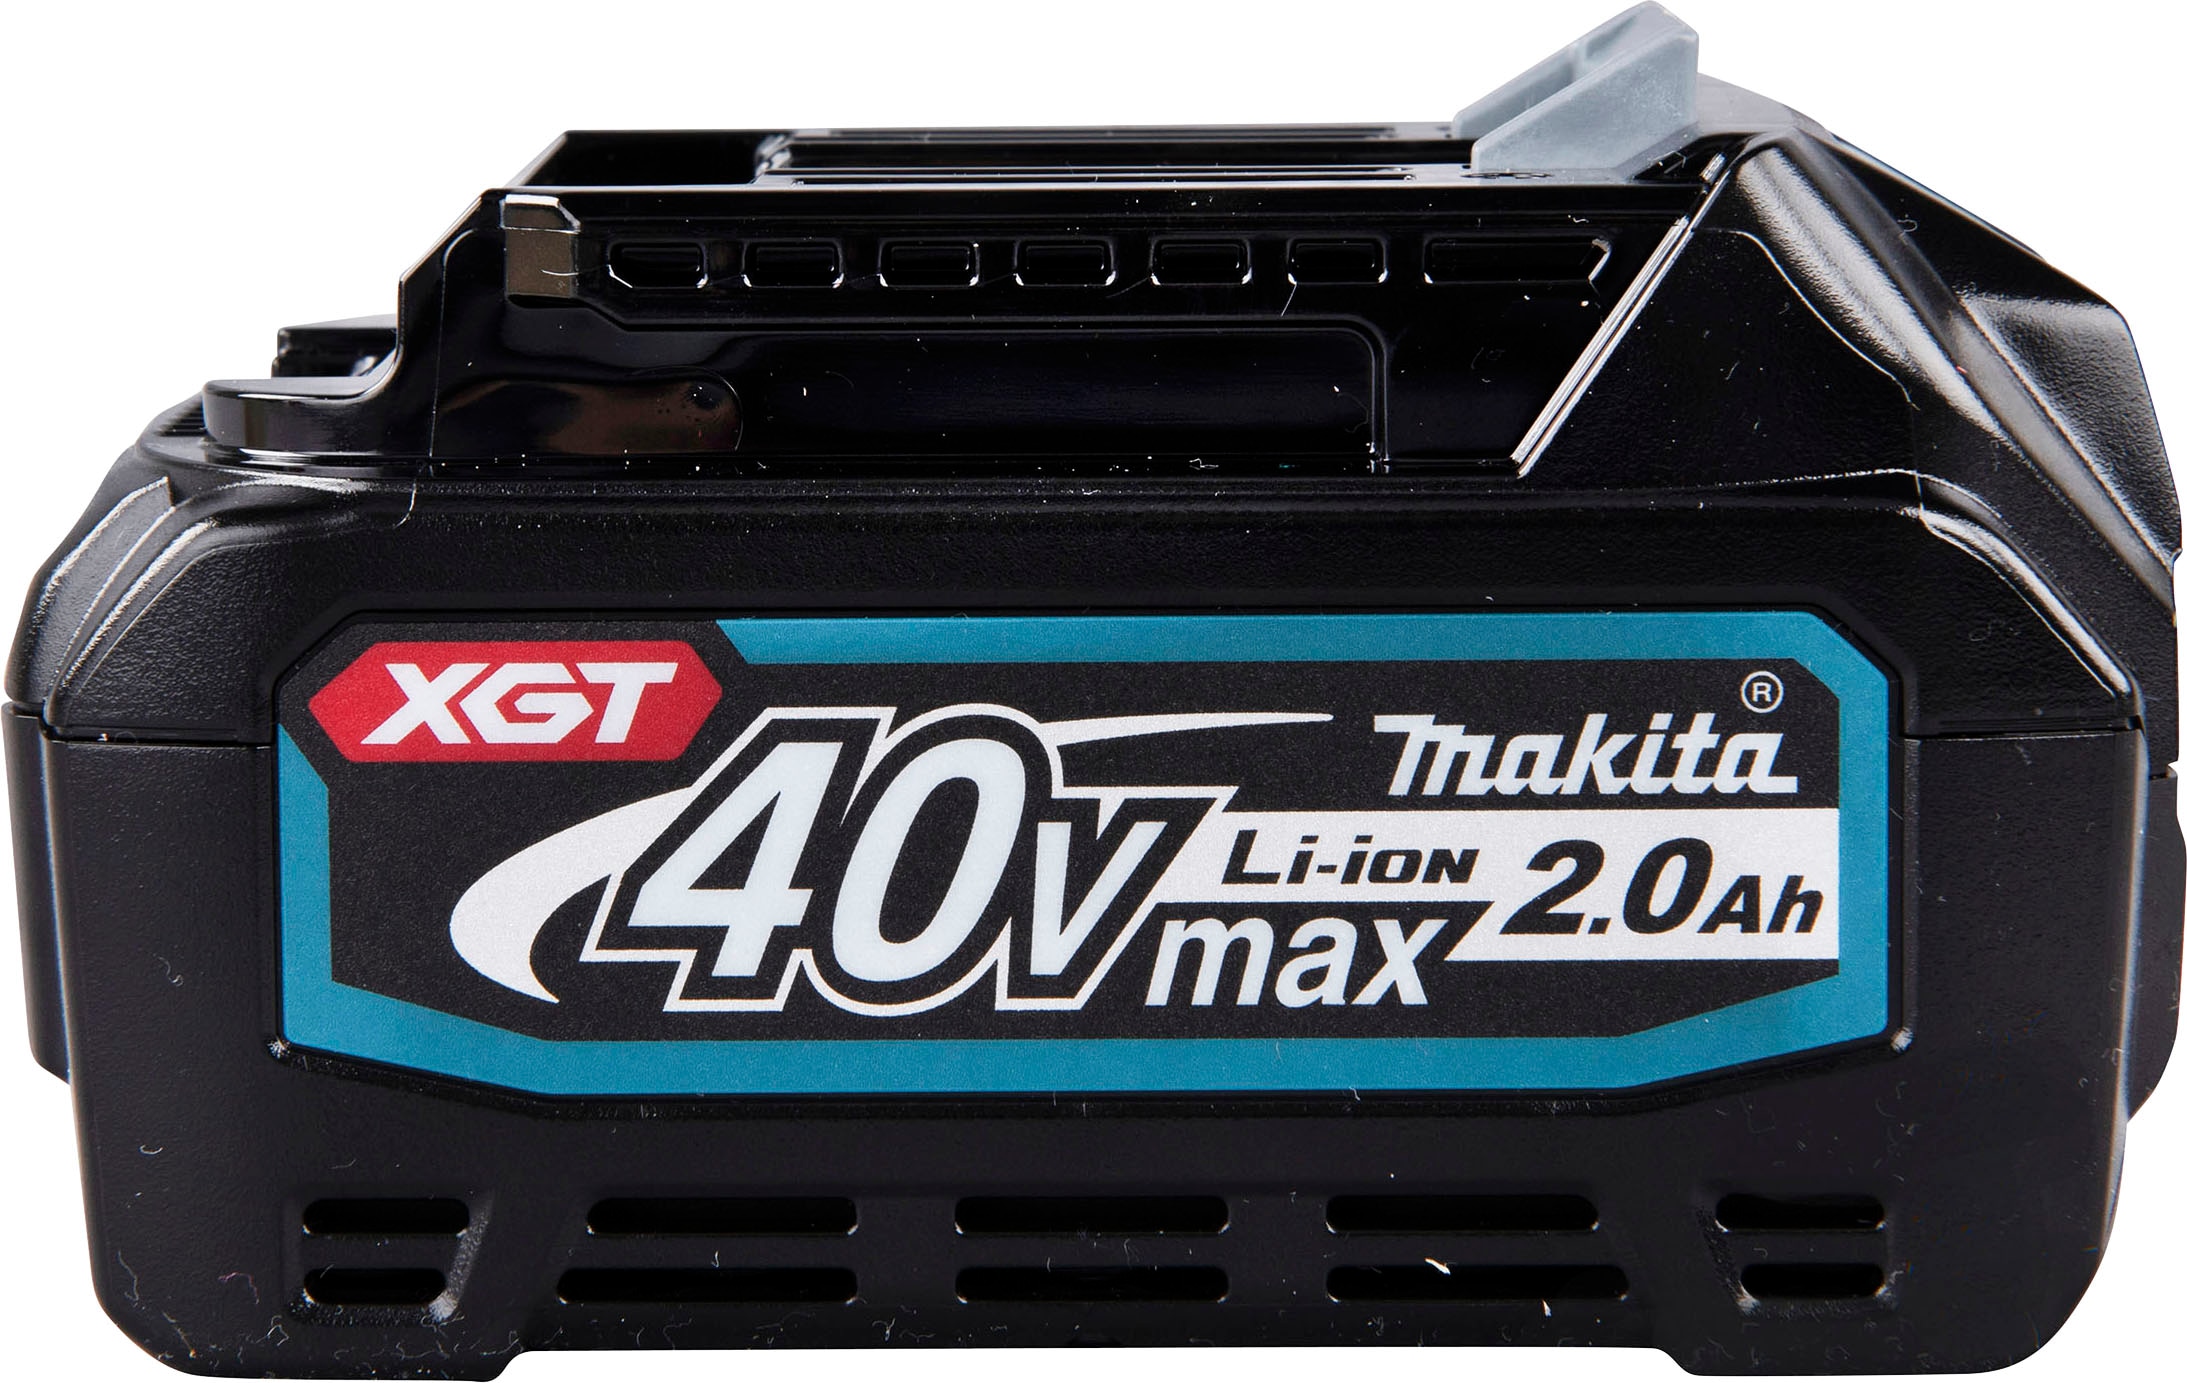 Verkaufsgeschäft Makita Akku »BL4020«, 40 V, 40V/2,0Ah XGT-Serie, bestellen auf Raten